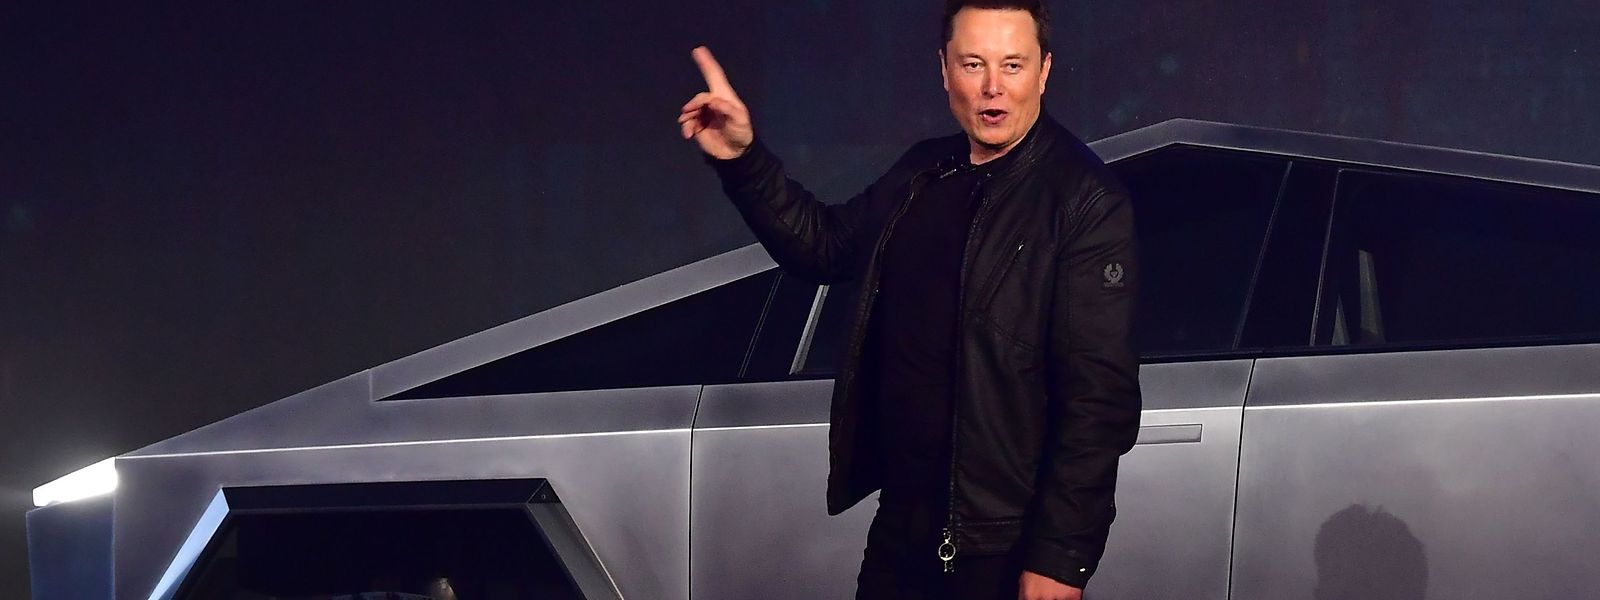 Schon bei der Präsentation des Tesla-Pickups lief es für Musk nicht ganz nach Plan.